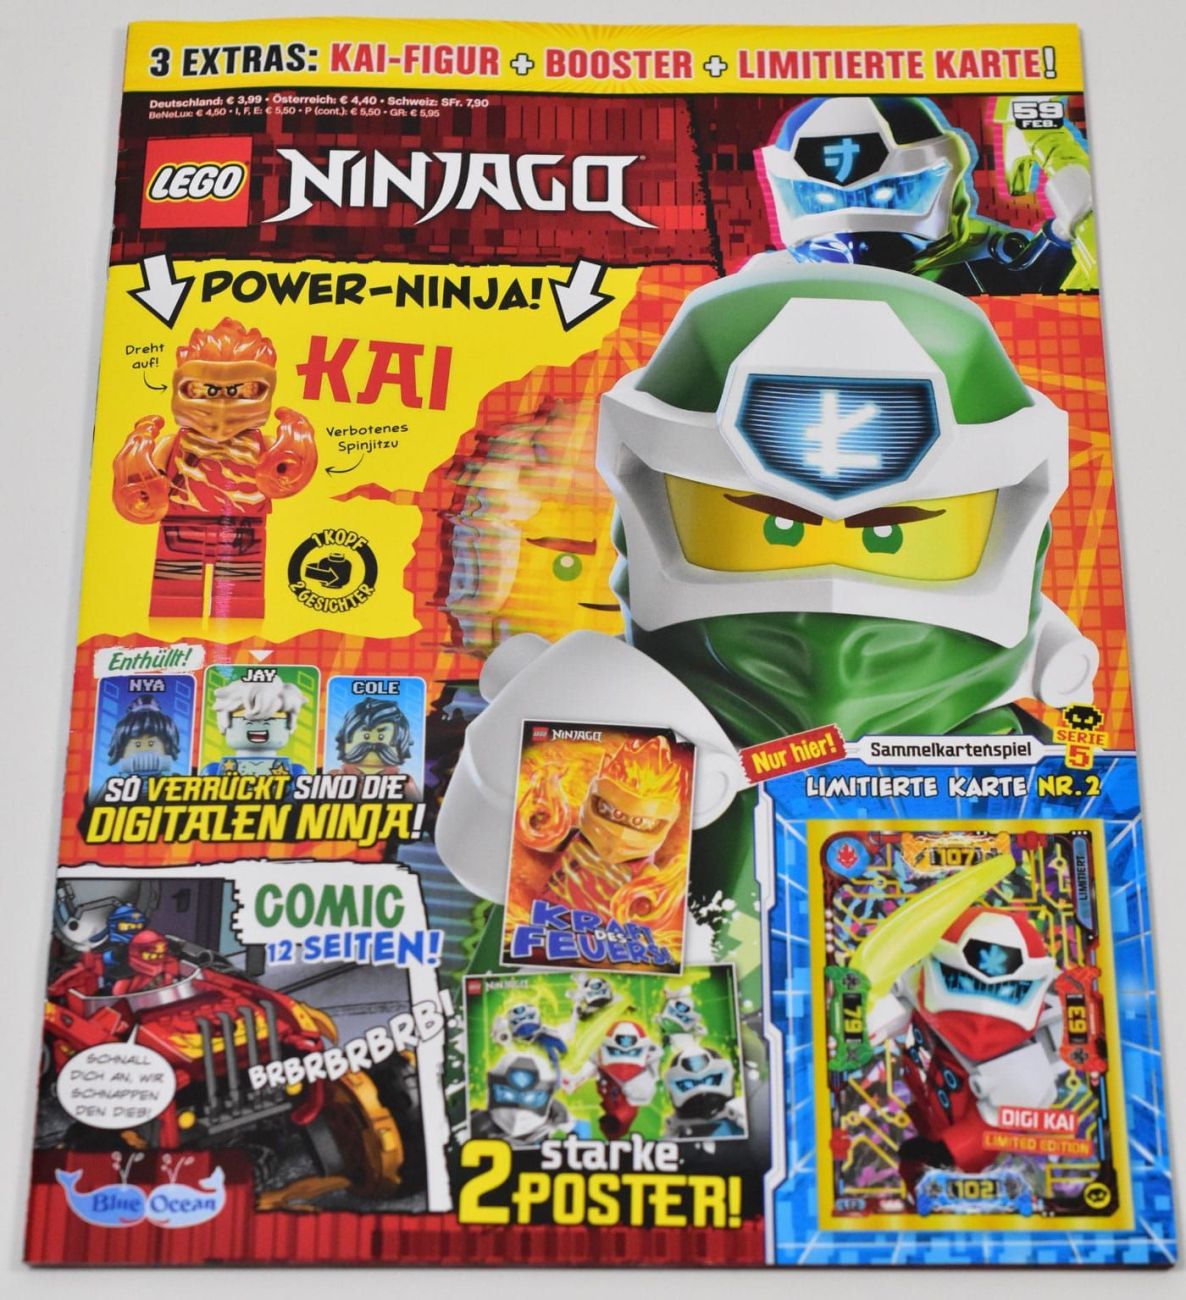 LEGO Ninjago Magazin Februar 2020